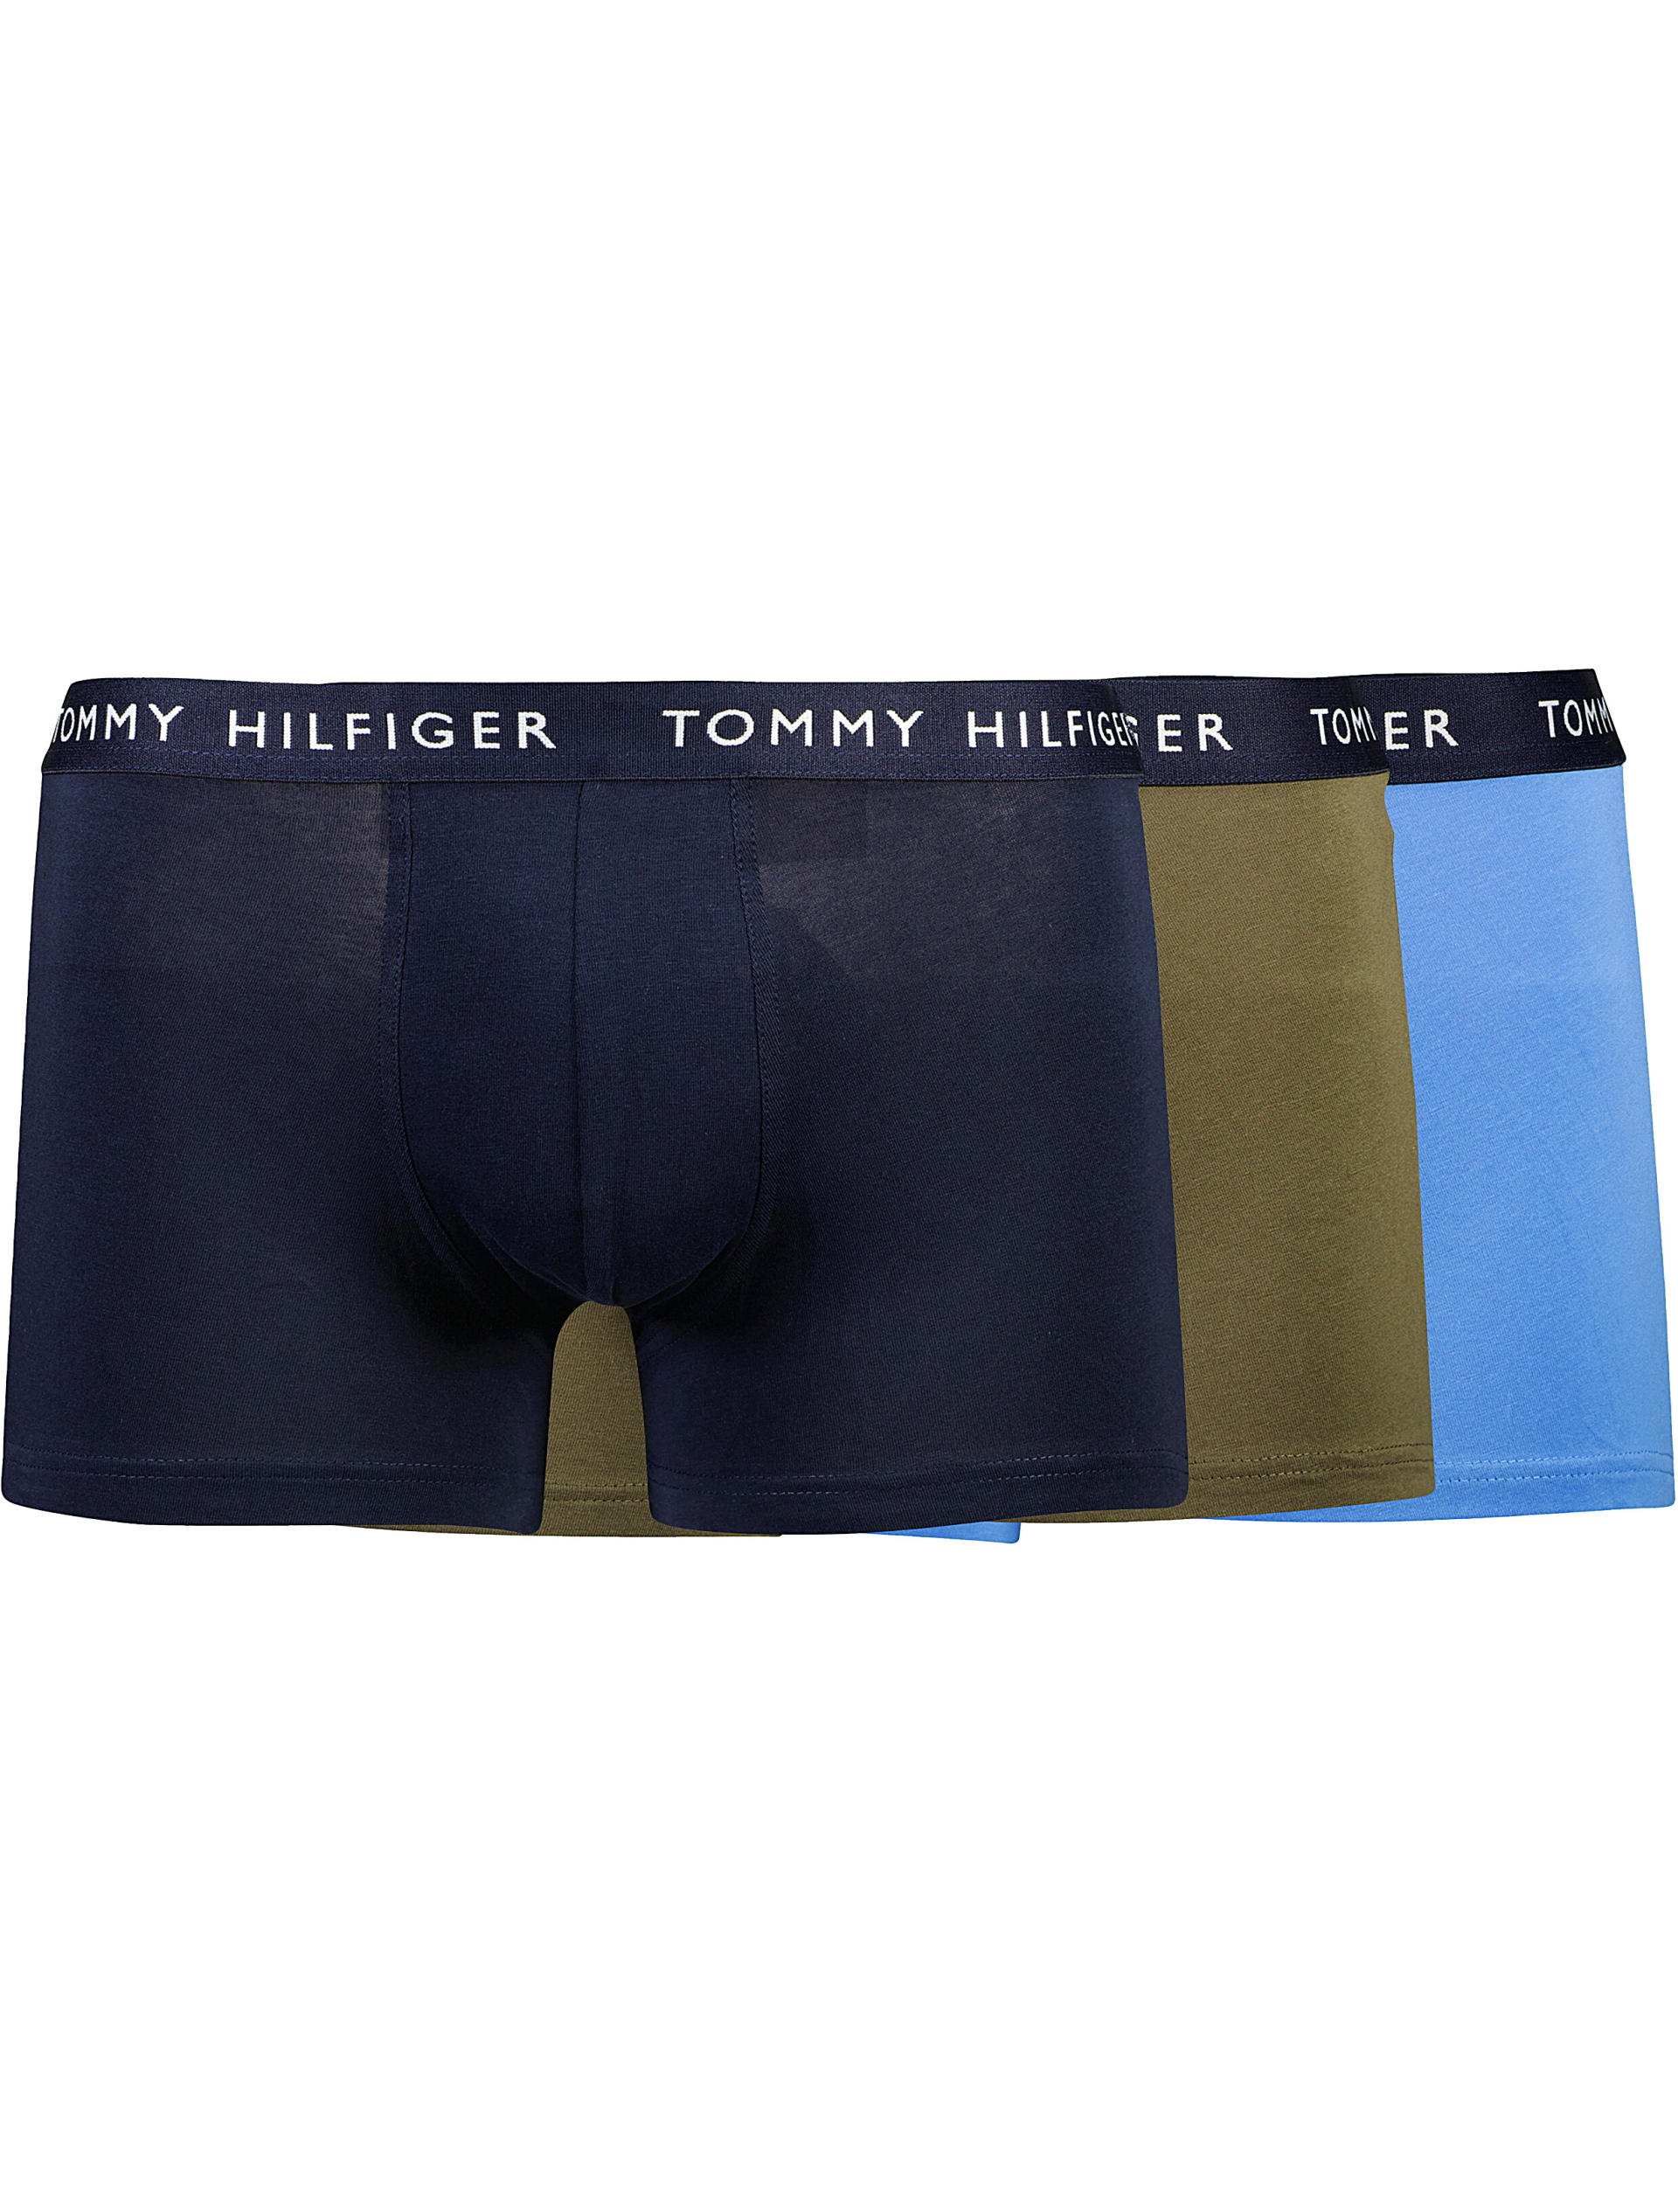 Tommy Hilfiger Tights multi / 0v2 multi